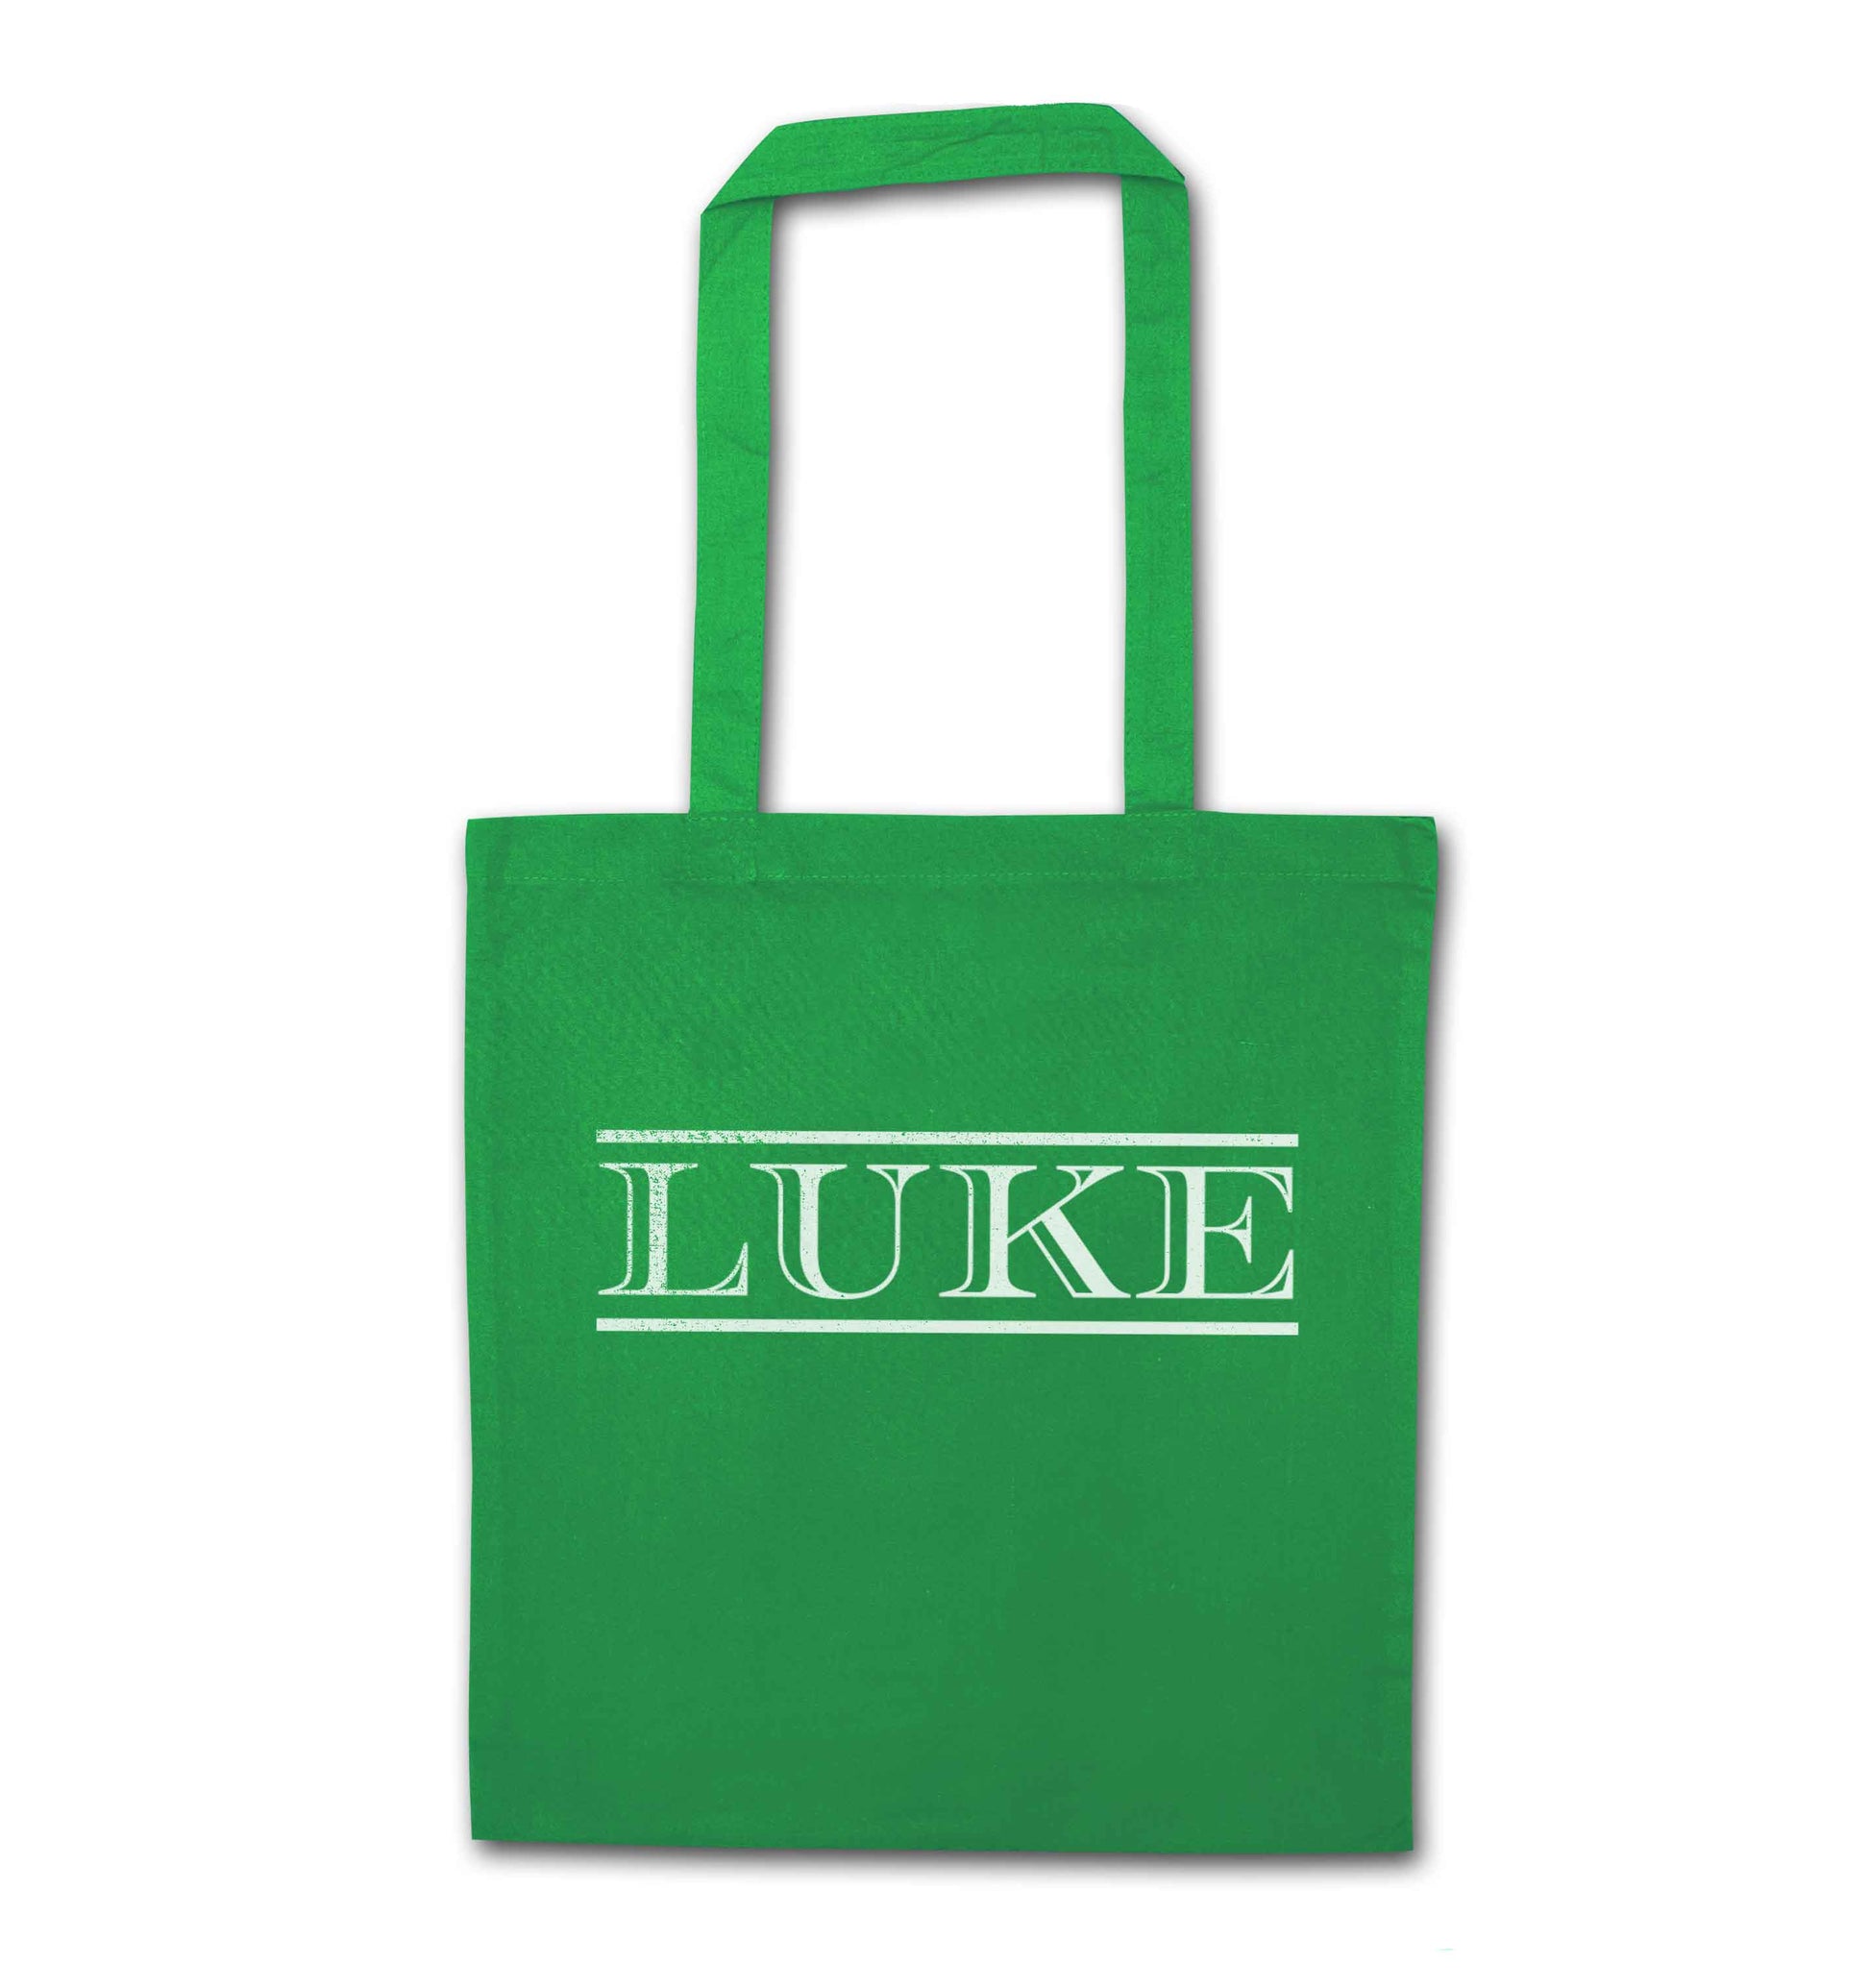 Personalised name green tote bag